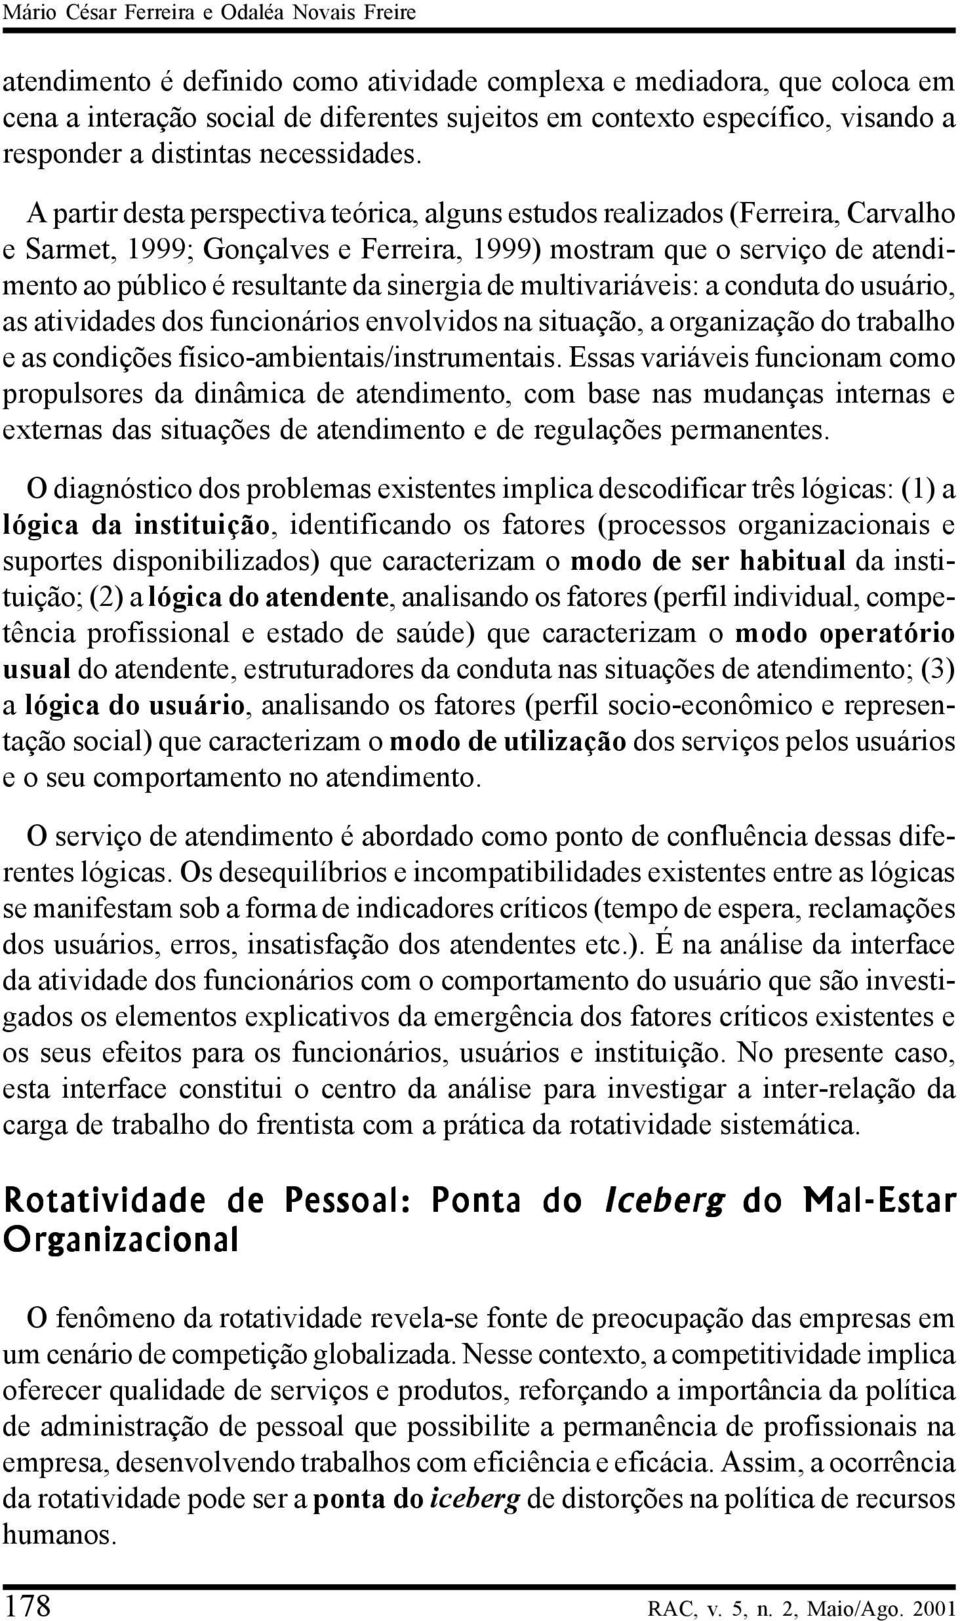 A partir desta perspectiva teórica, alguns estudos realizados (Ferreira, Carvalho e Sarmet, 1999; Gonçalves e Ferreira, 1999) mostram que o serviço de atendimento ao público é resultante da sinergia